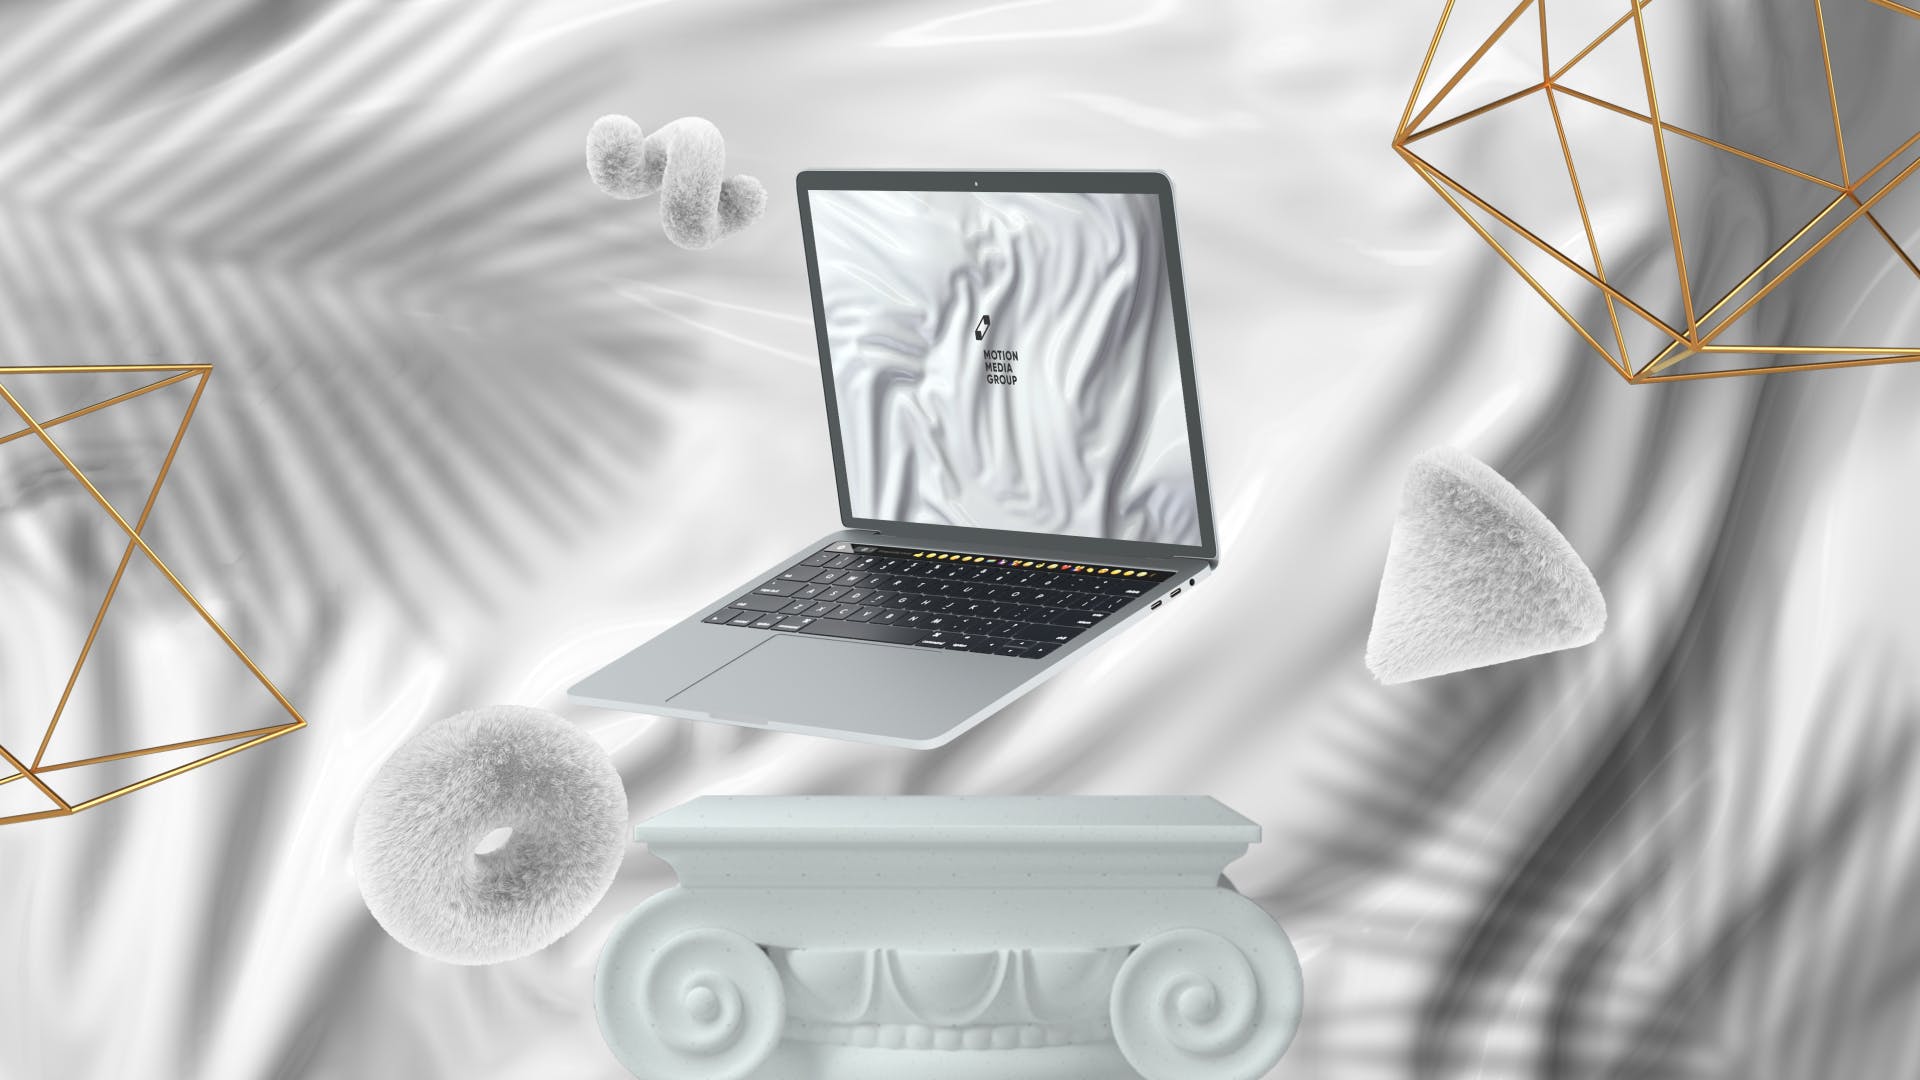 优雅时尚风格3D立体风格笔记本电脑屏幕预览素材库精选样机 10 Light Laptop Mockups插图(9)